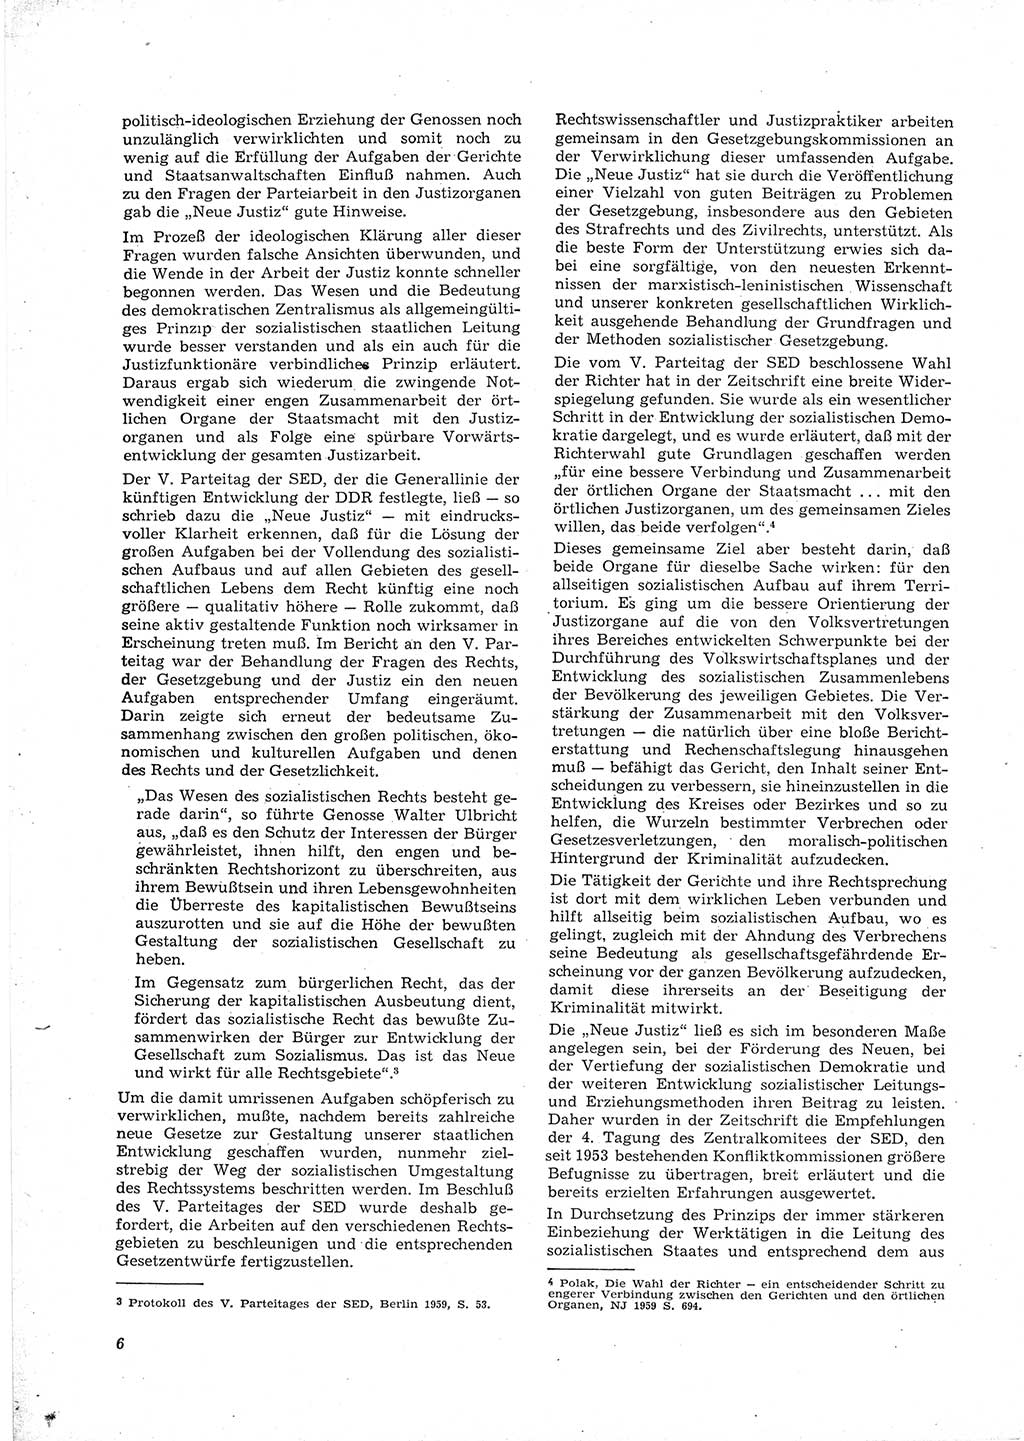 Neue Justiz (NJ), Zeitschrift für Recht und Rechtswissenschaft [Deutsche Demokratische Republik (DDR)], 16. Jahrgang 1962, Seite 6 (NJ DDR 1962, S. 6)